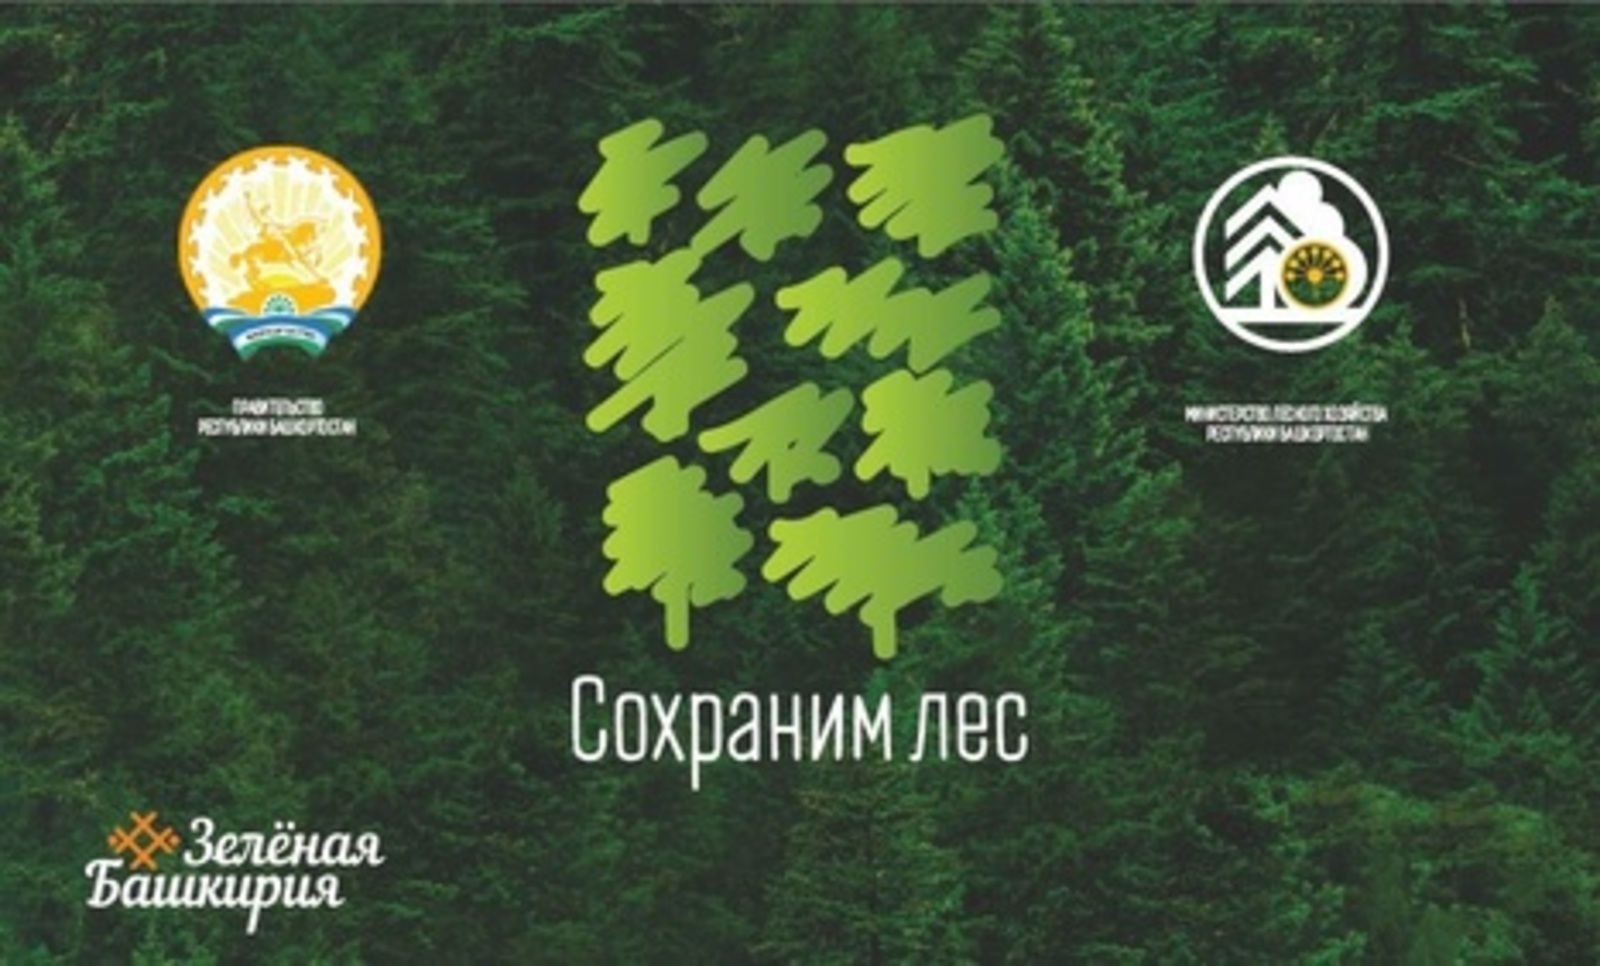 В рамках Всероссийской акции «Сохраним лес» башкирские лесоводы высадят 300 тысяч новых деревьев